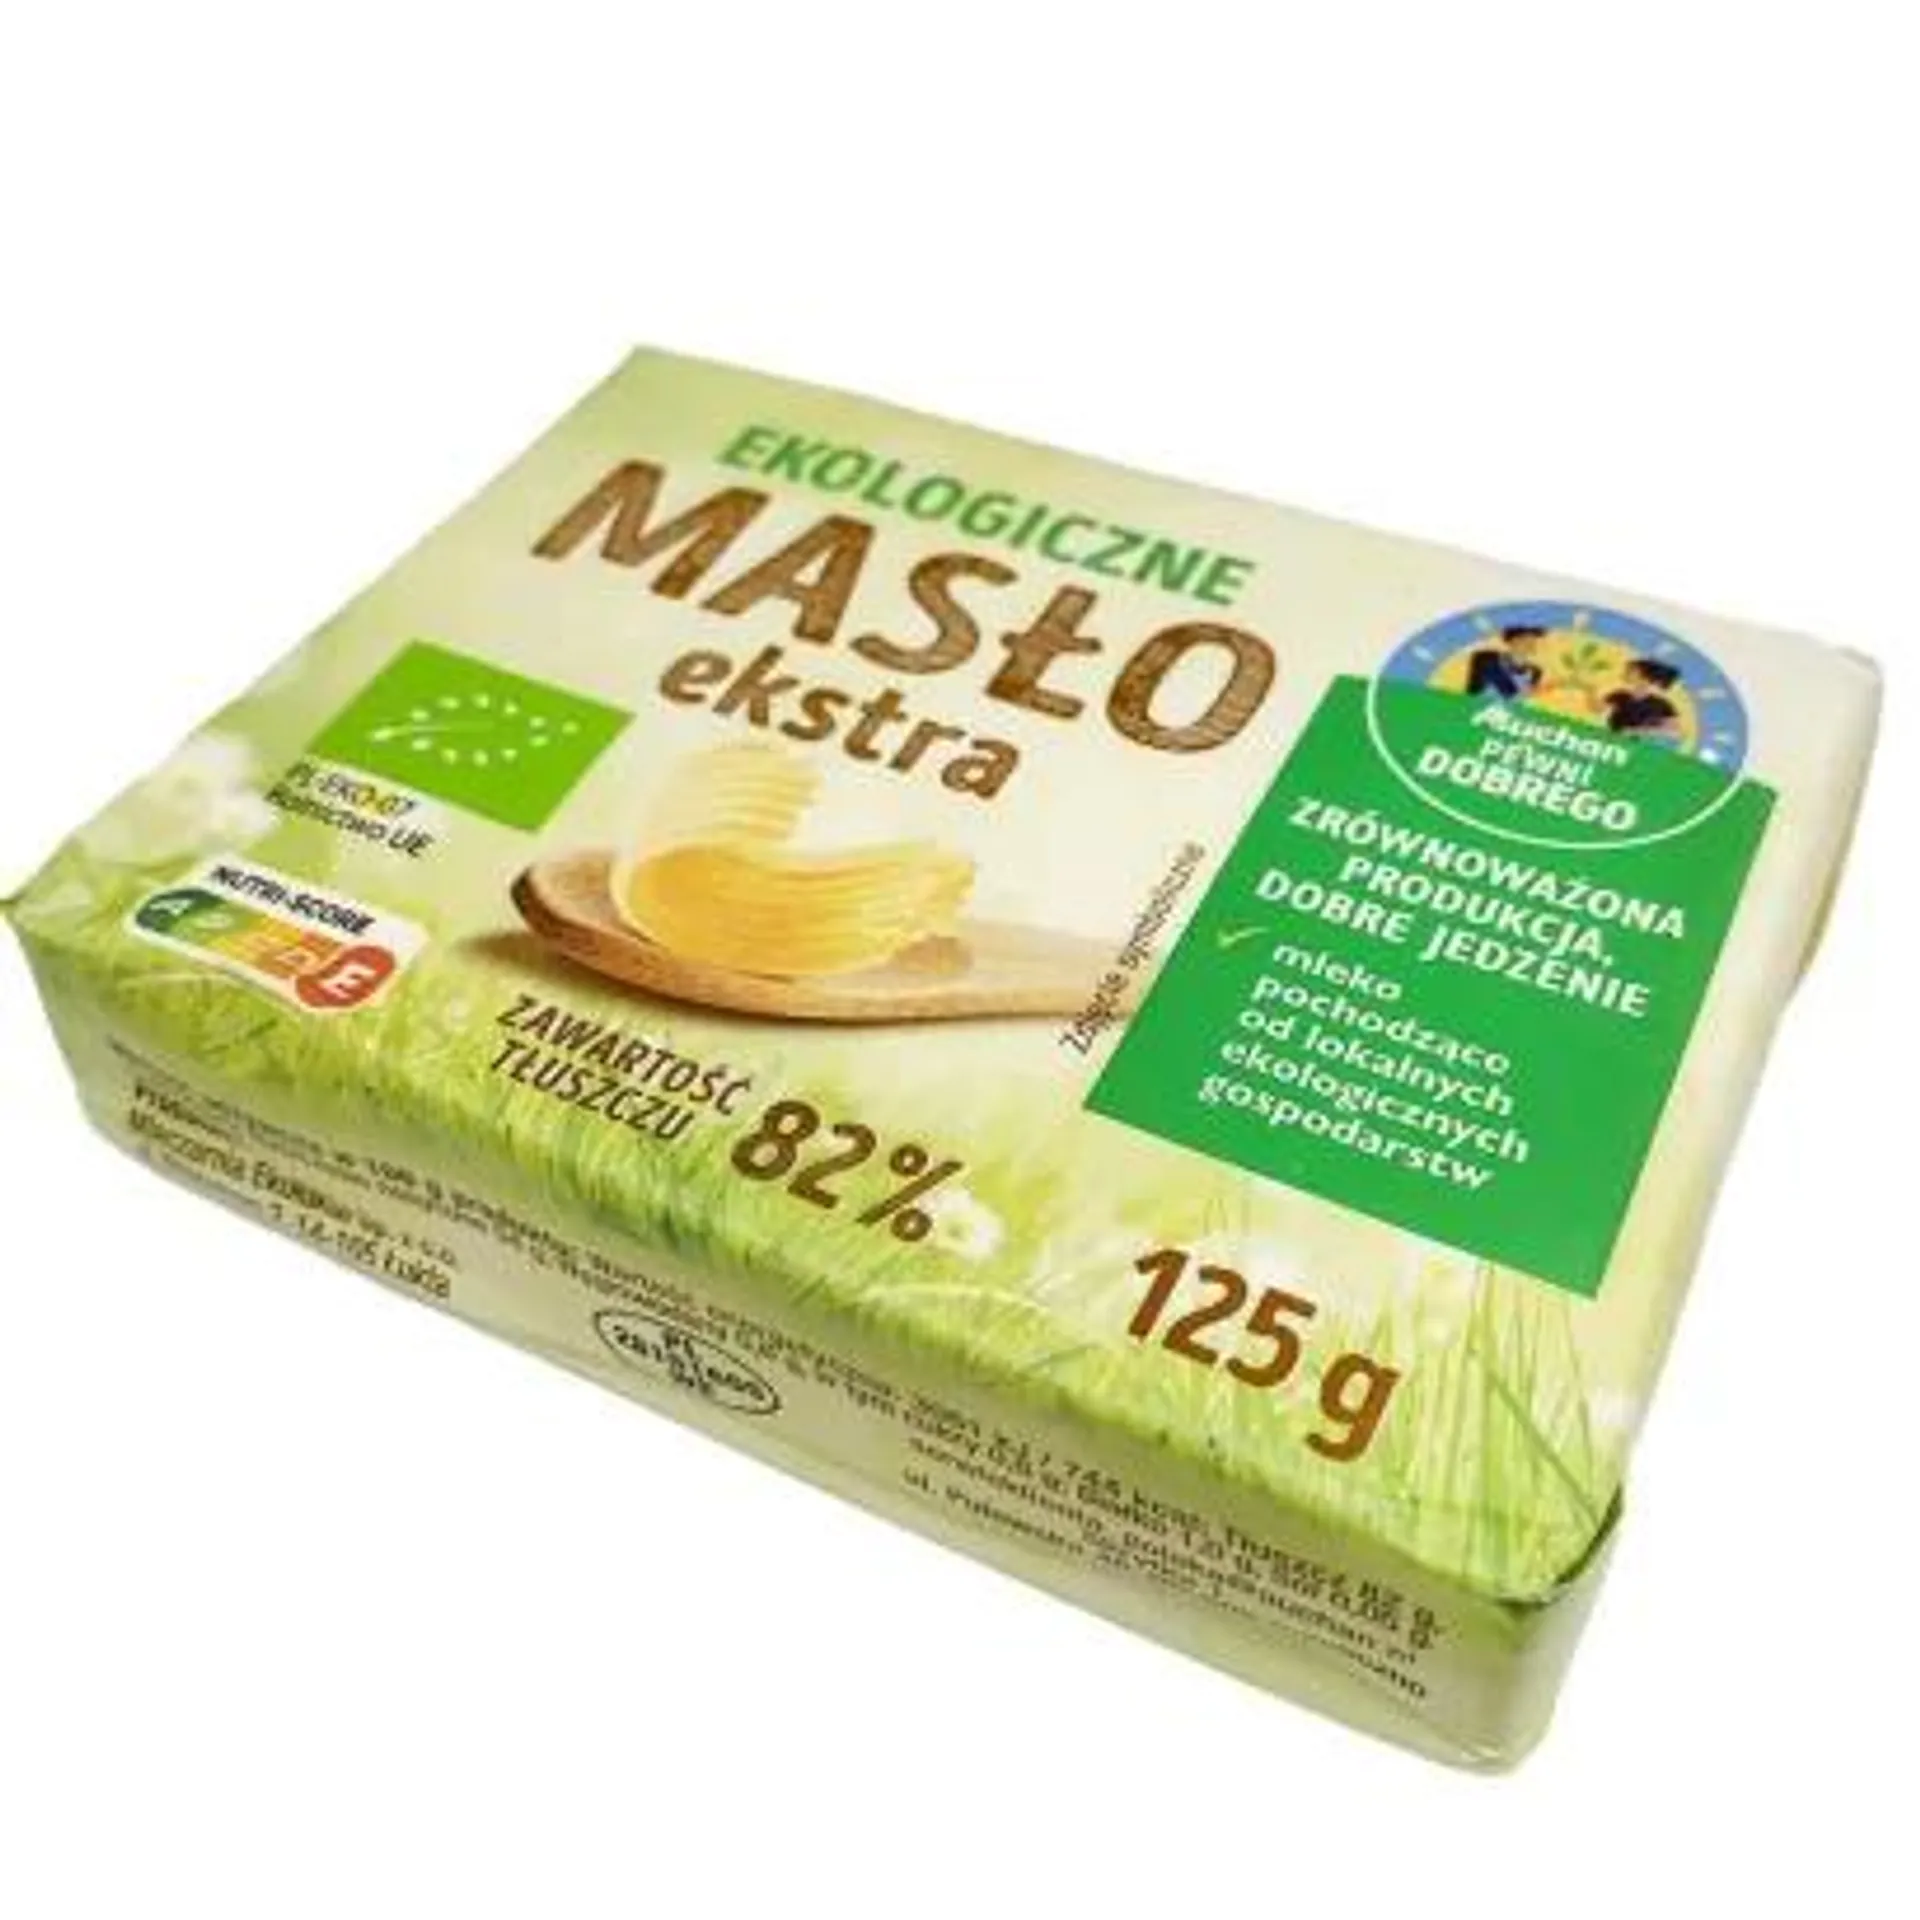 Pewni Dobrego - Ekologiczne masło ekstra 82%